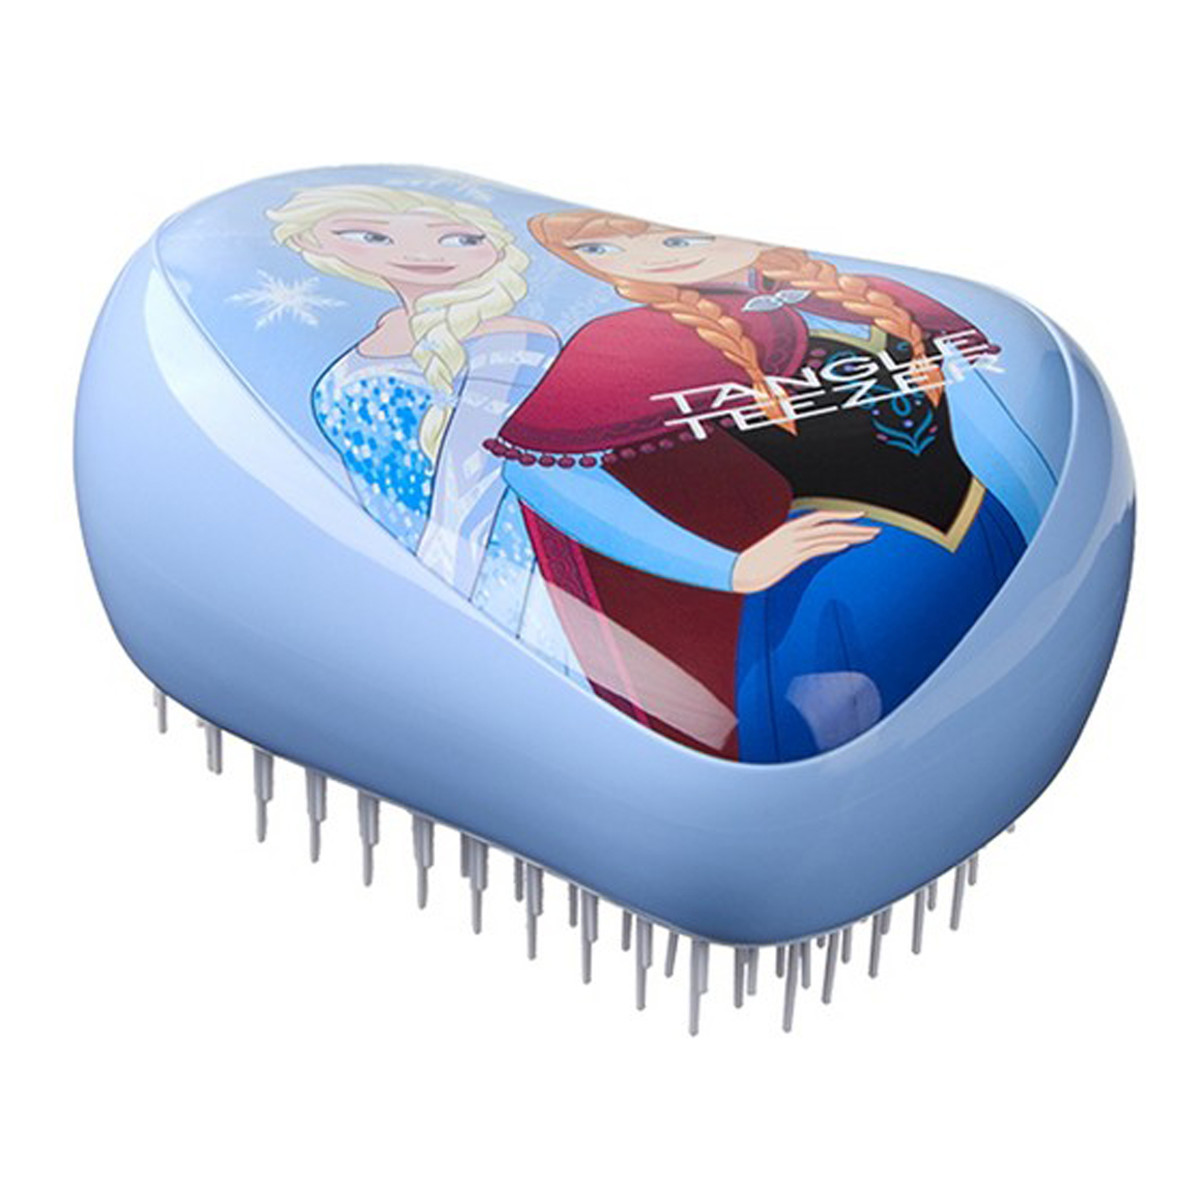 Tangle Teezer Compact Styler szczotka do włosów Disney Frozen